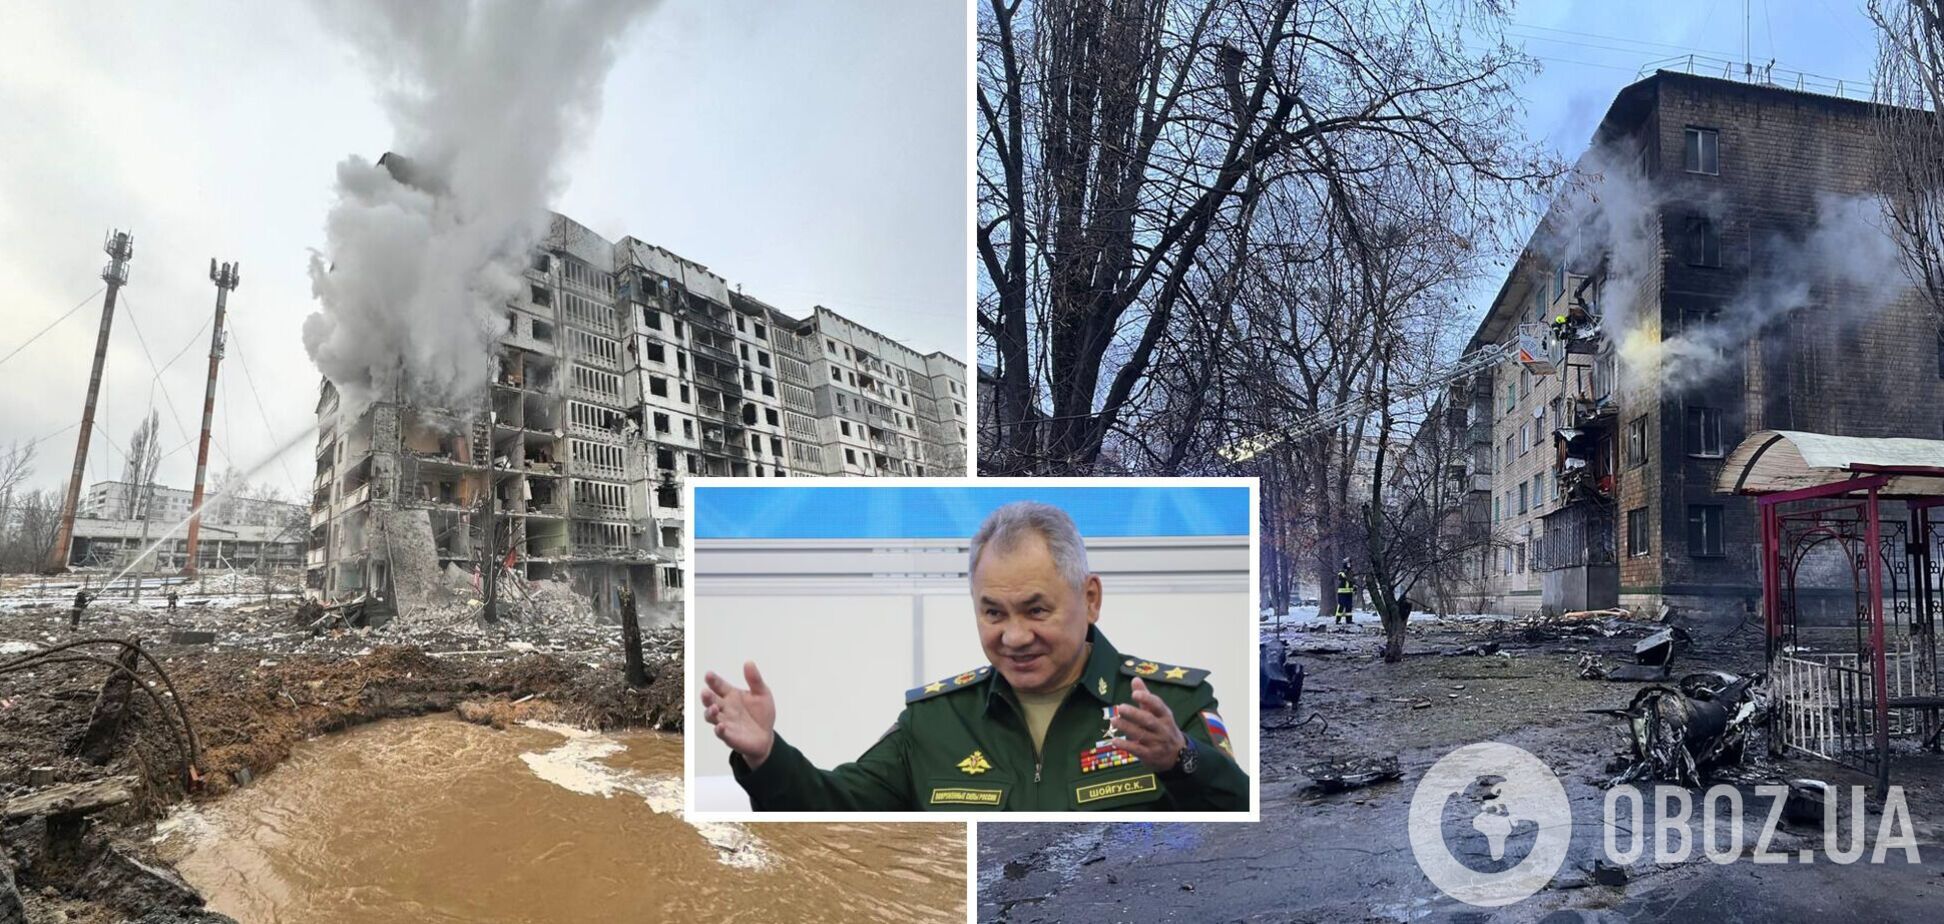 'Ціль досягнута': у Шойгу похвалилися ударом по Україні, внаслідок якого загинули мирні мешканці